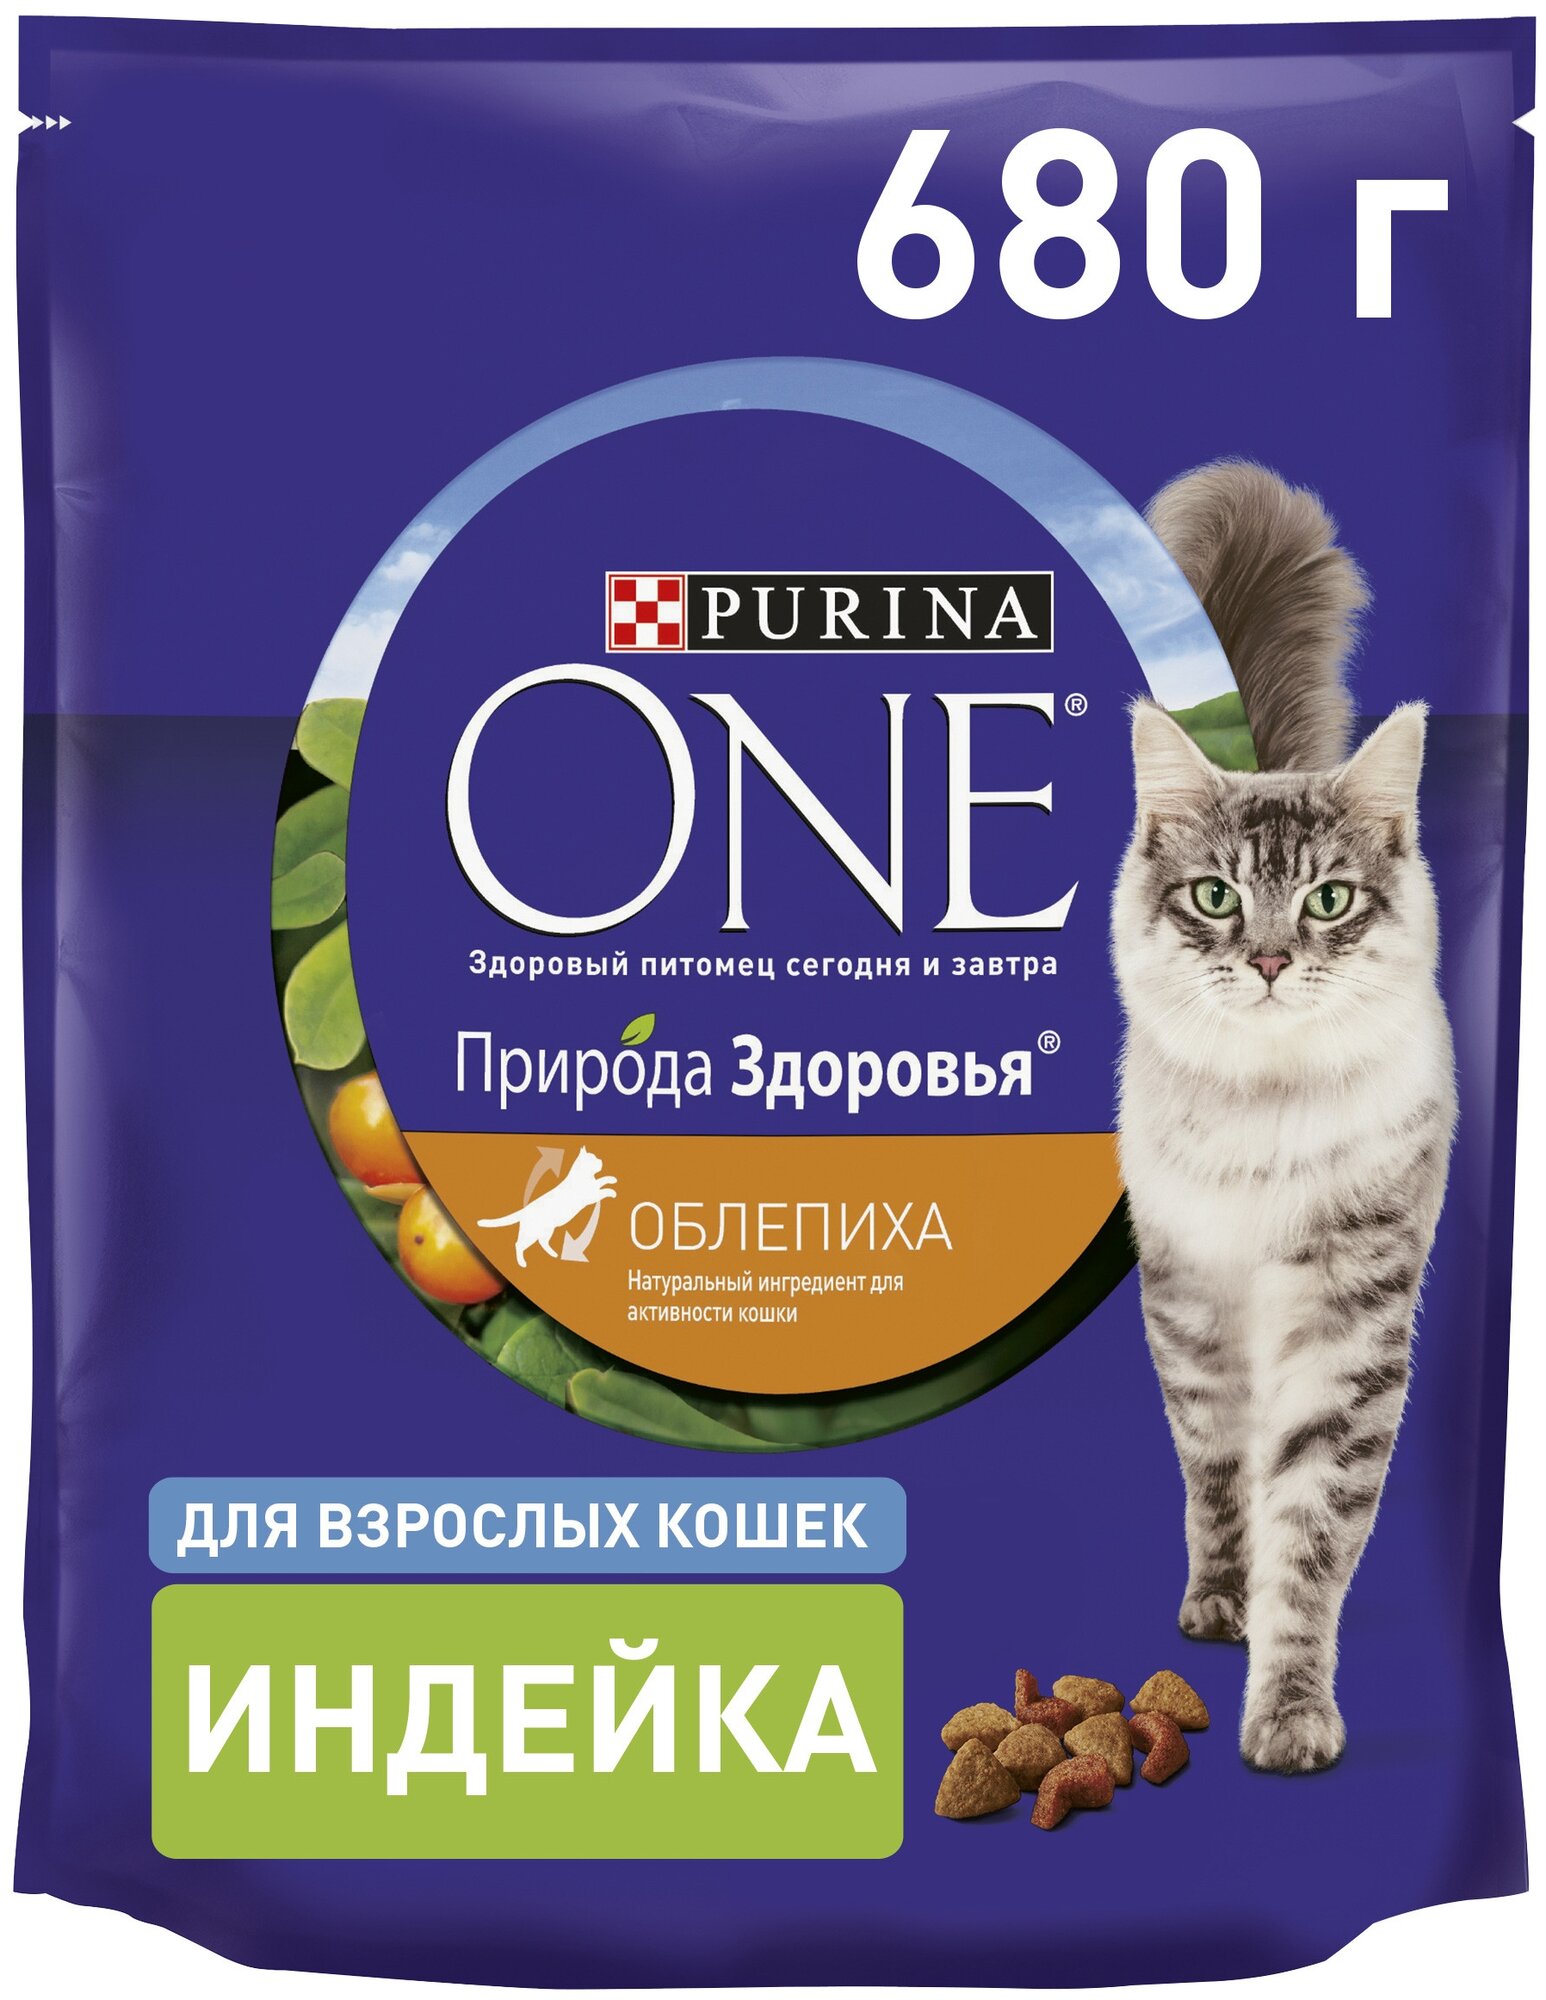 Сухой корм Purina ONE® Природа Здоровья для взрослых кошек, с высоким содержанием индейки, 680 г